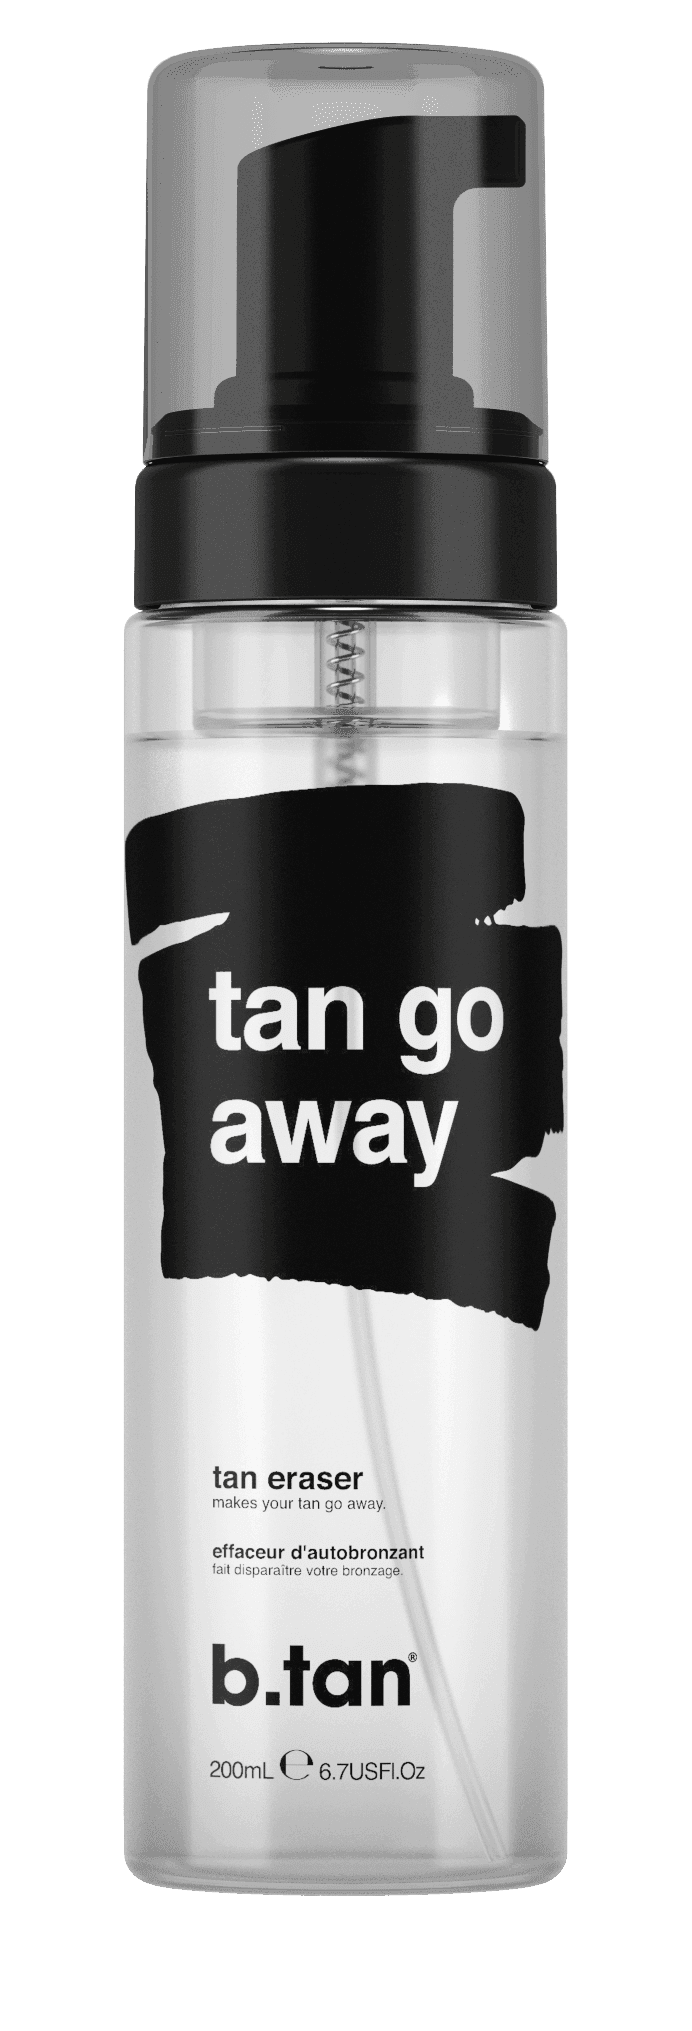 B.tan Tan Go Away Tan Eraser | Selvbruning | B.tan | JK SHOP | JK Barber og herre frisør | Lavepriser | Best